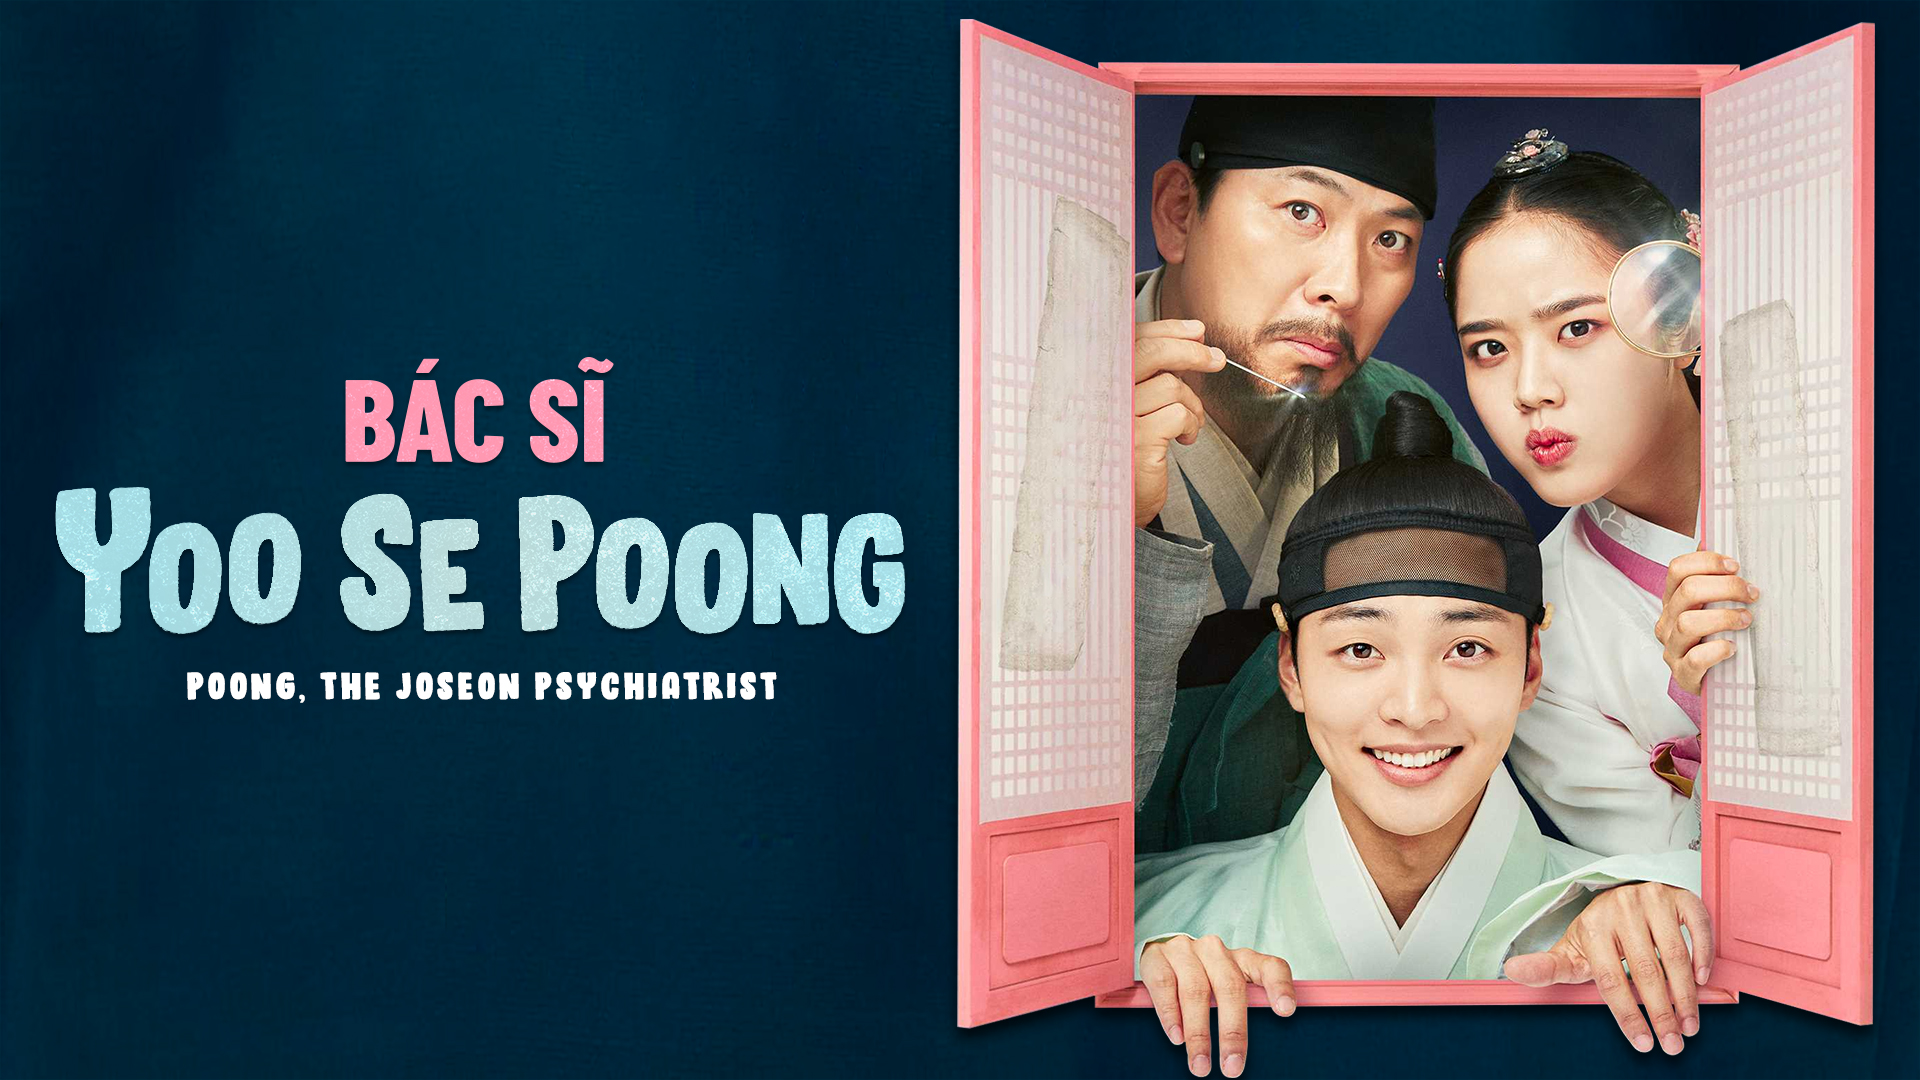 Xem Phim Bác Sĩ Tâm Thần Joseon Yoo Se Poong Tập 1 VietSub   Thuyết Minh